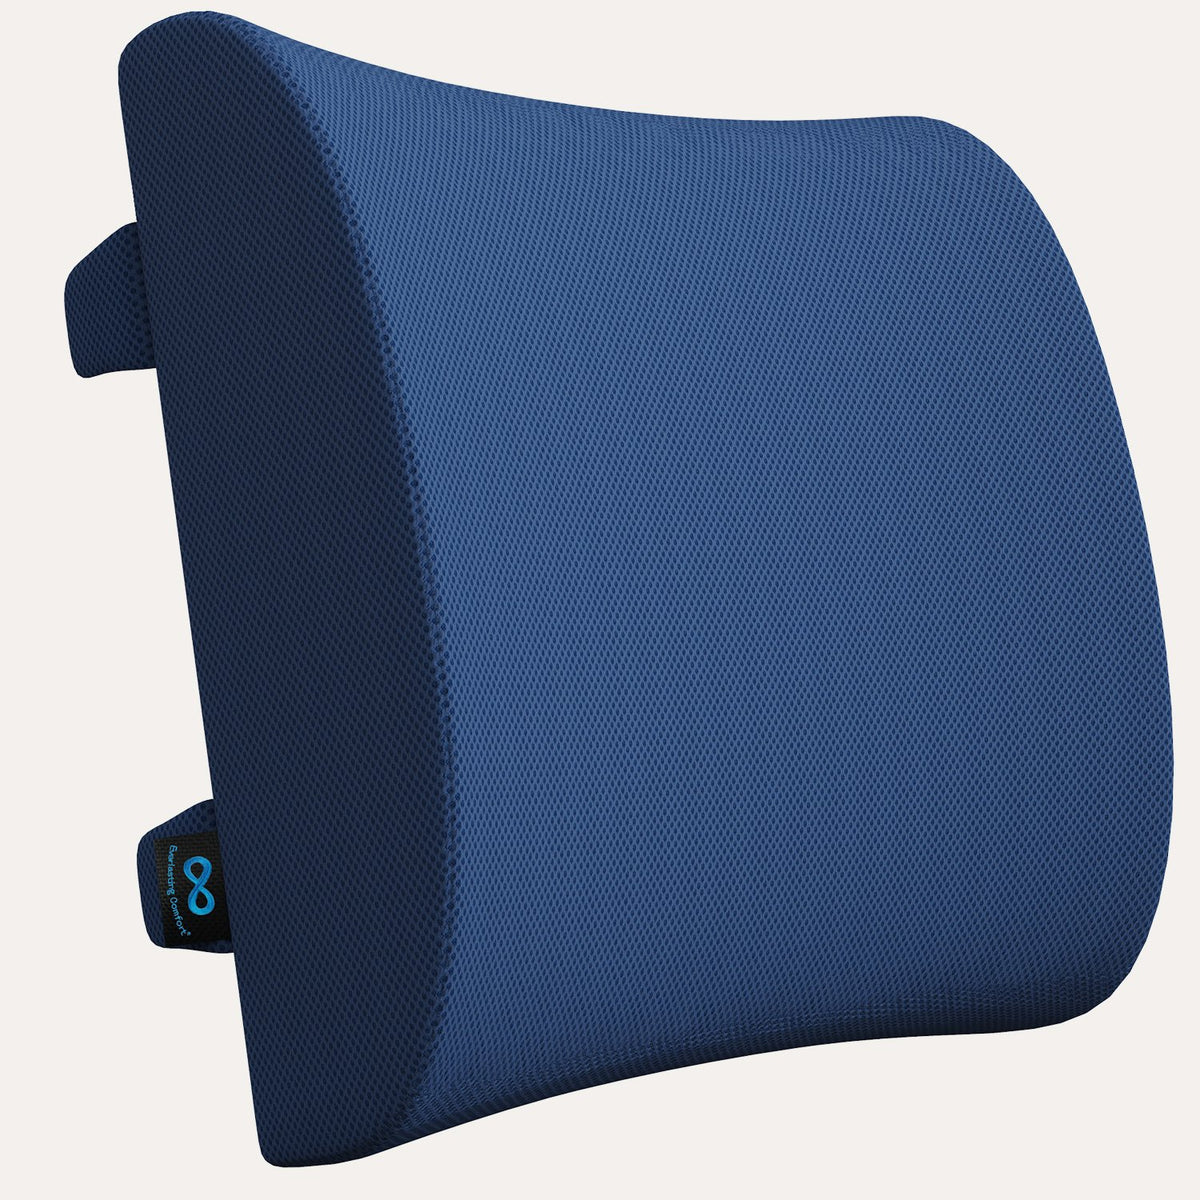 https://www.everlastingcomfort.net/cdn/shop/products/back-cushion-lumbar-support-pillow-navy-blue-29827859022012_1200x.jpg?v=1685954383